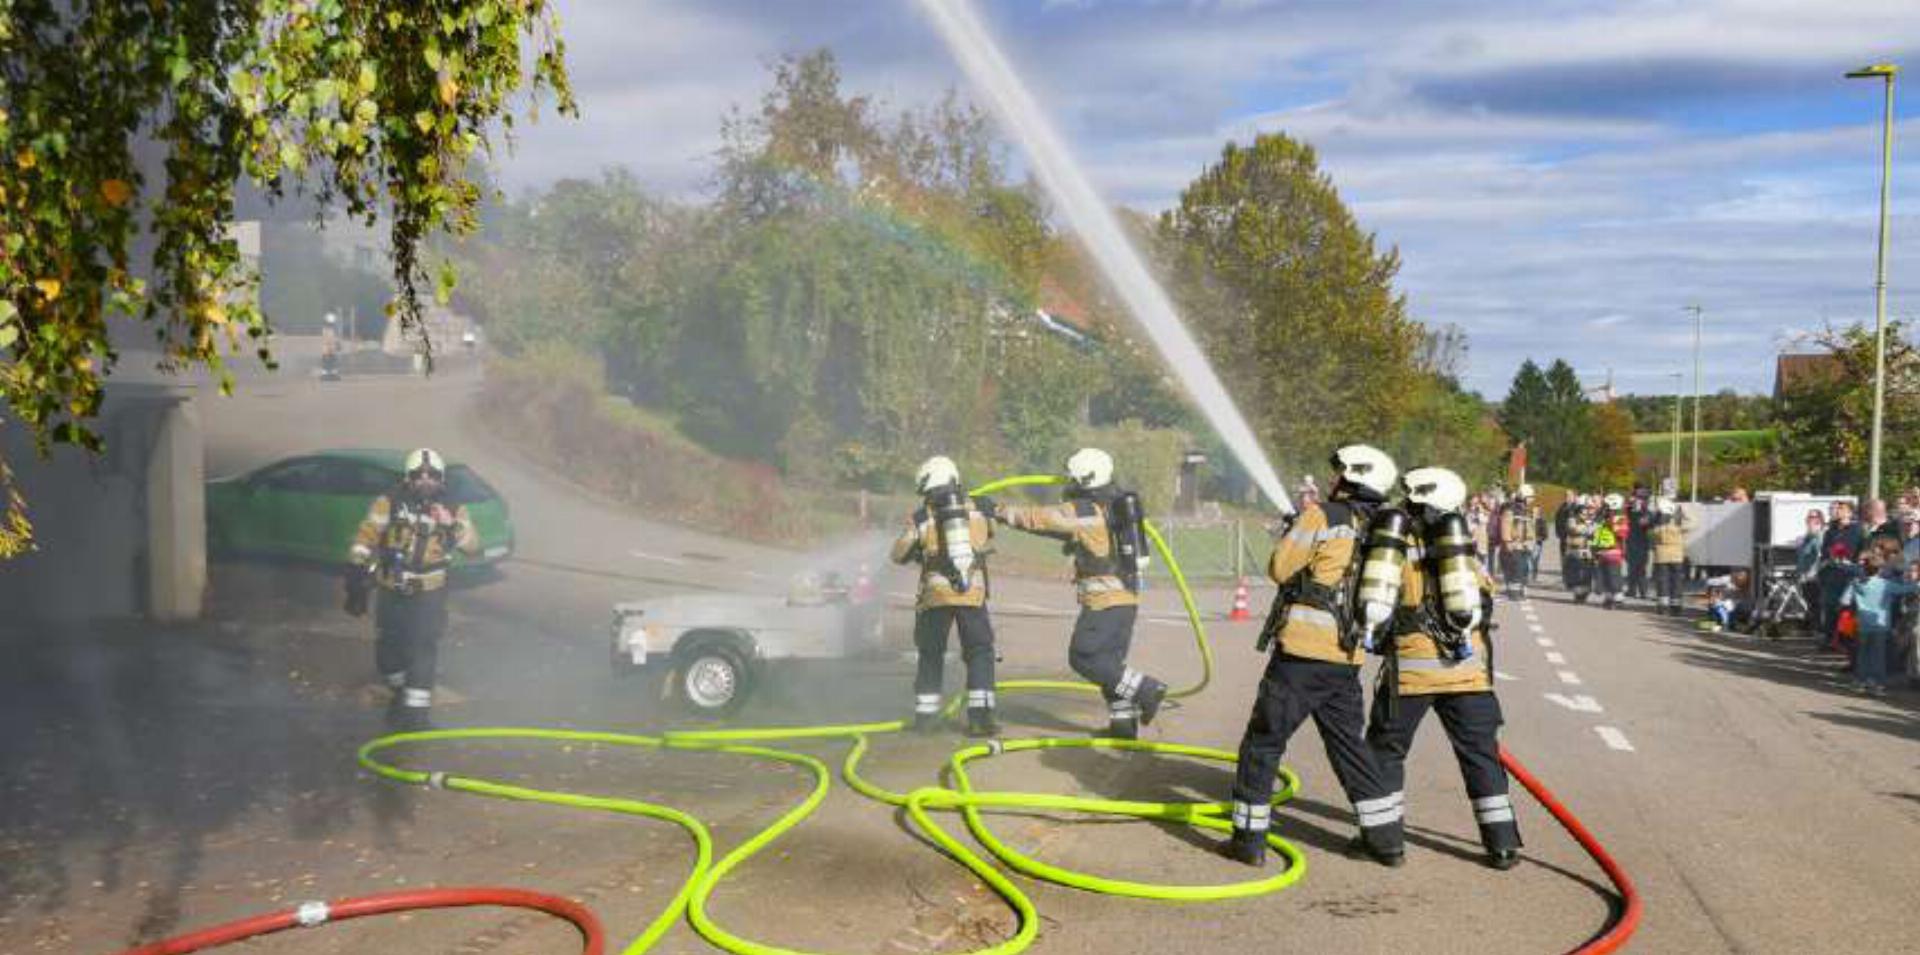 Erfolgreiche Brandbekämpfung unter den Augen zahlreicher Be sucherinnen und Besucher. Bilder Elmar Gächter